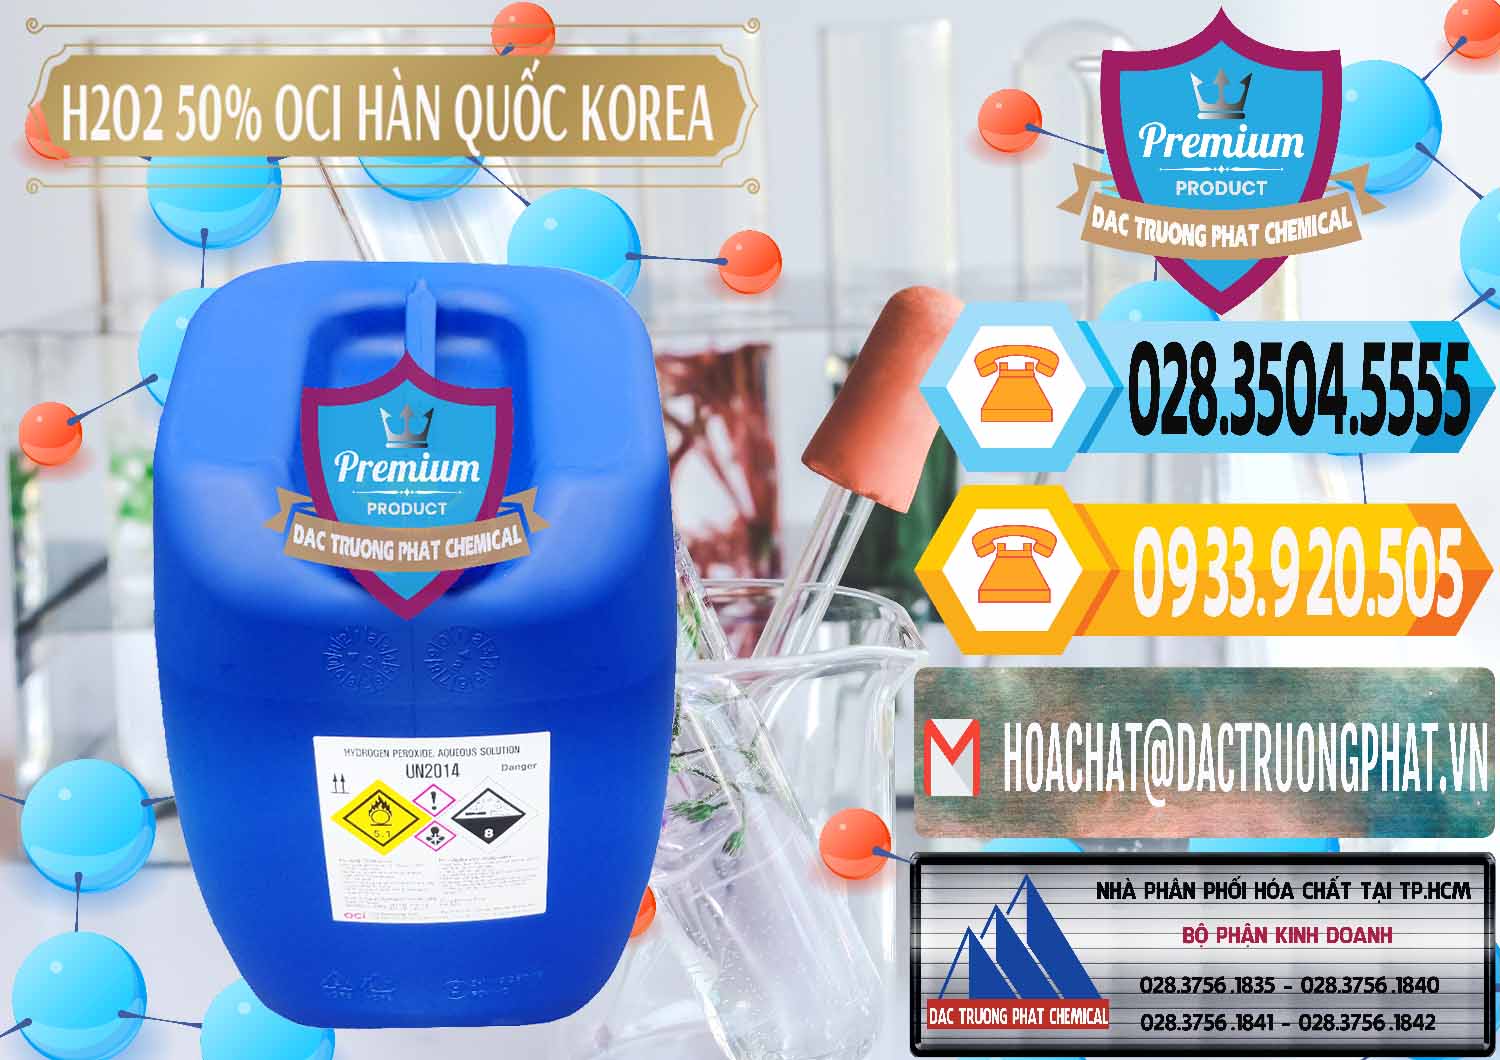 Công ty chuyên cung ứng và bán H2O2 - Hydrogen Peroxide 50% OCI Hàn Quốc Korea - 0075 - Đơn vị bán - phân phối hóa chất tại TP.HCM - hoachattayrua.net